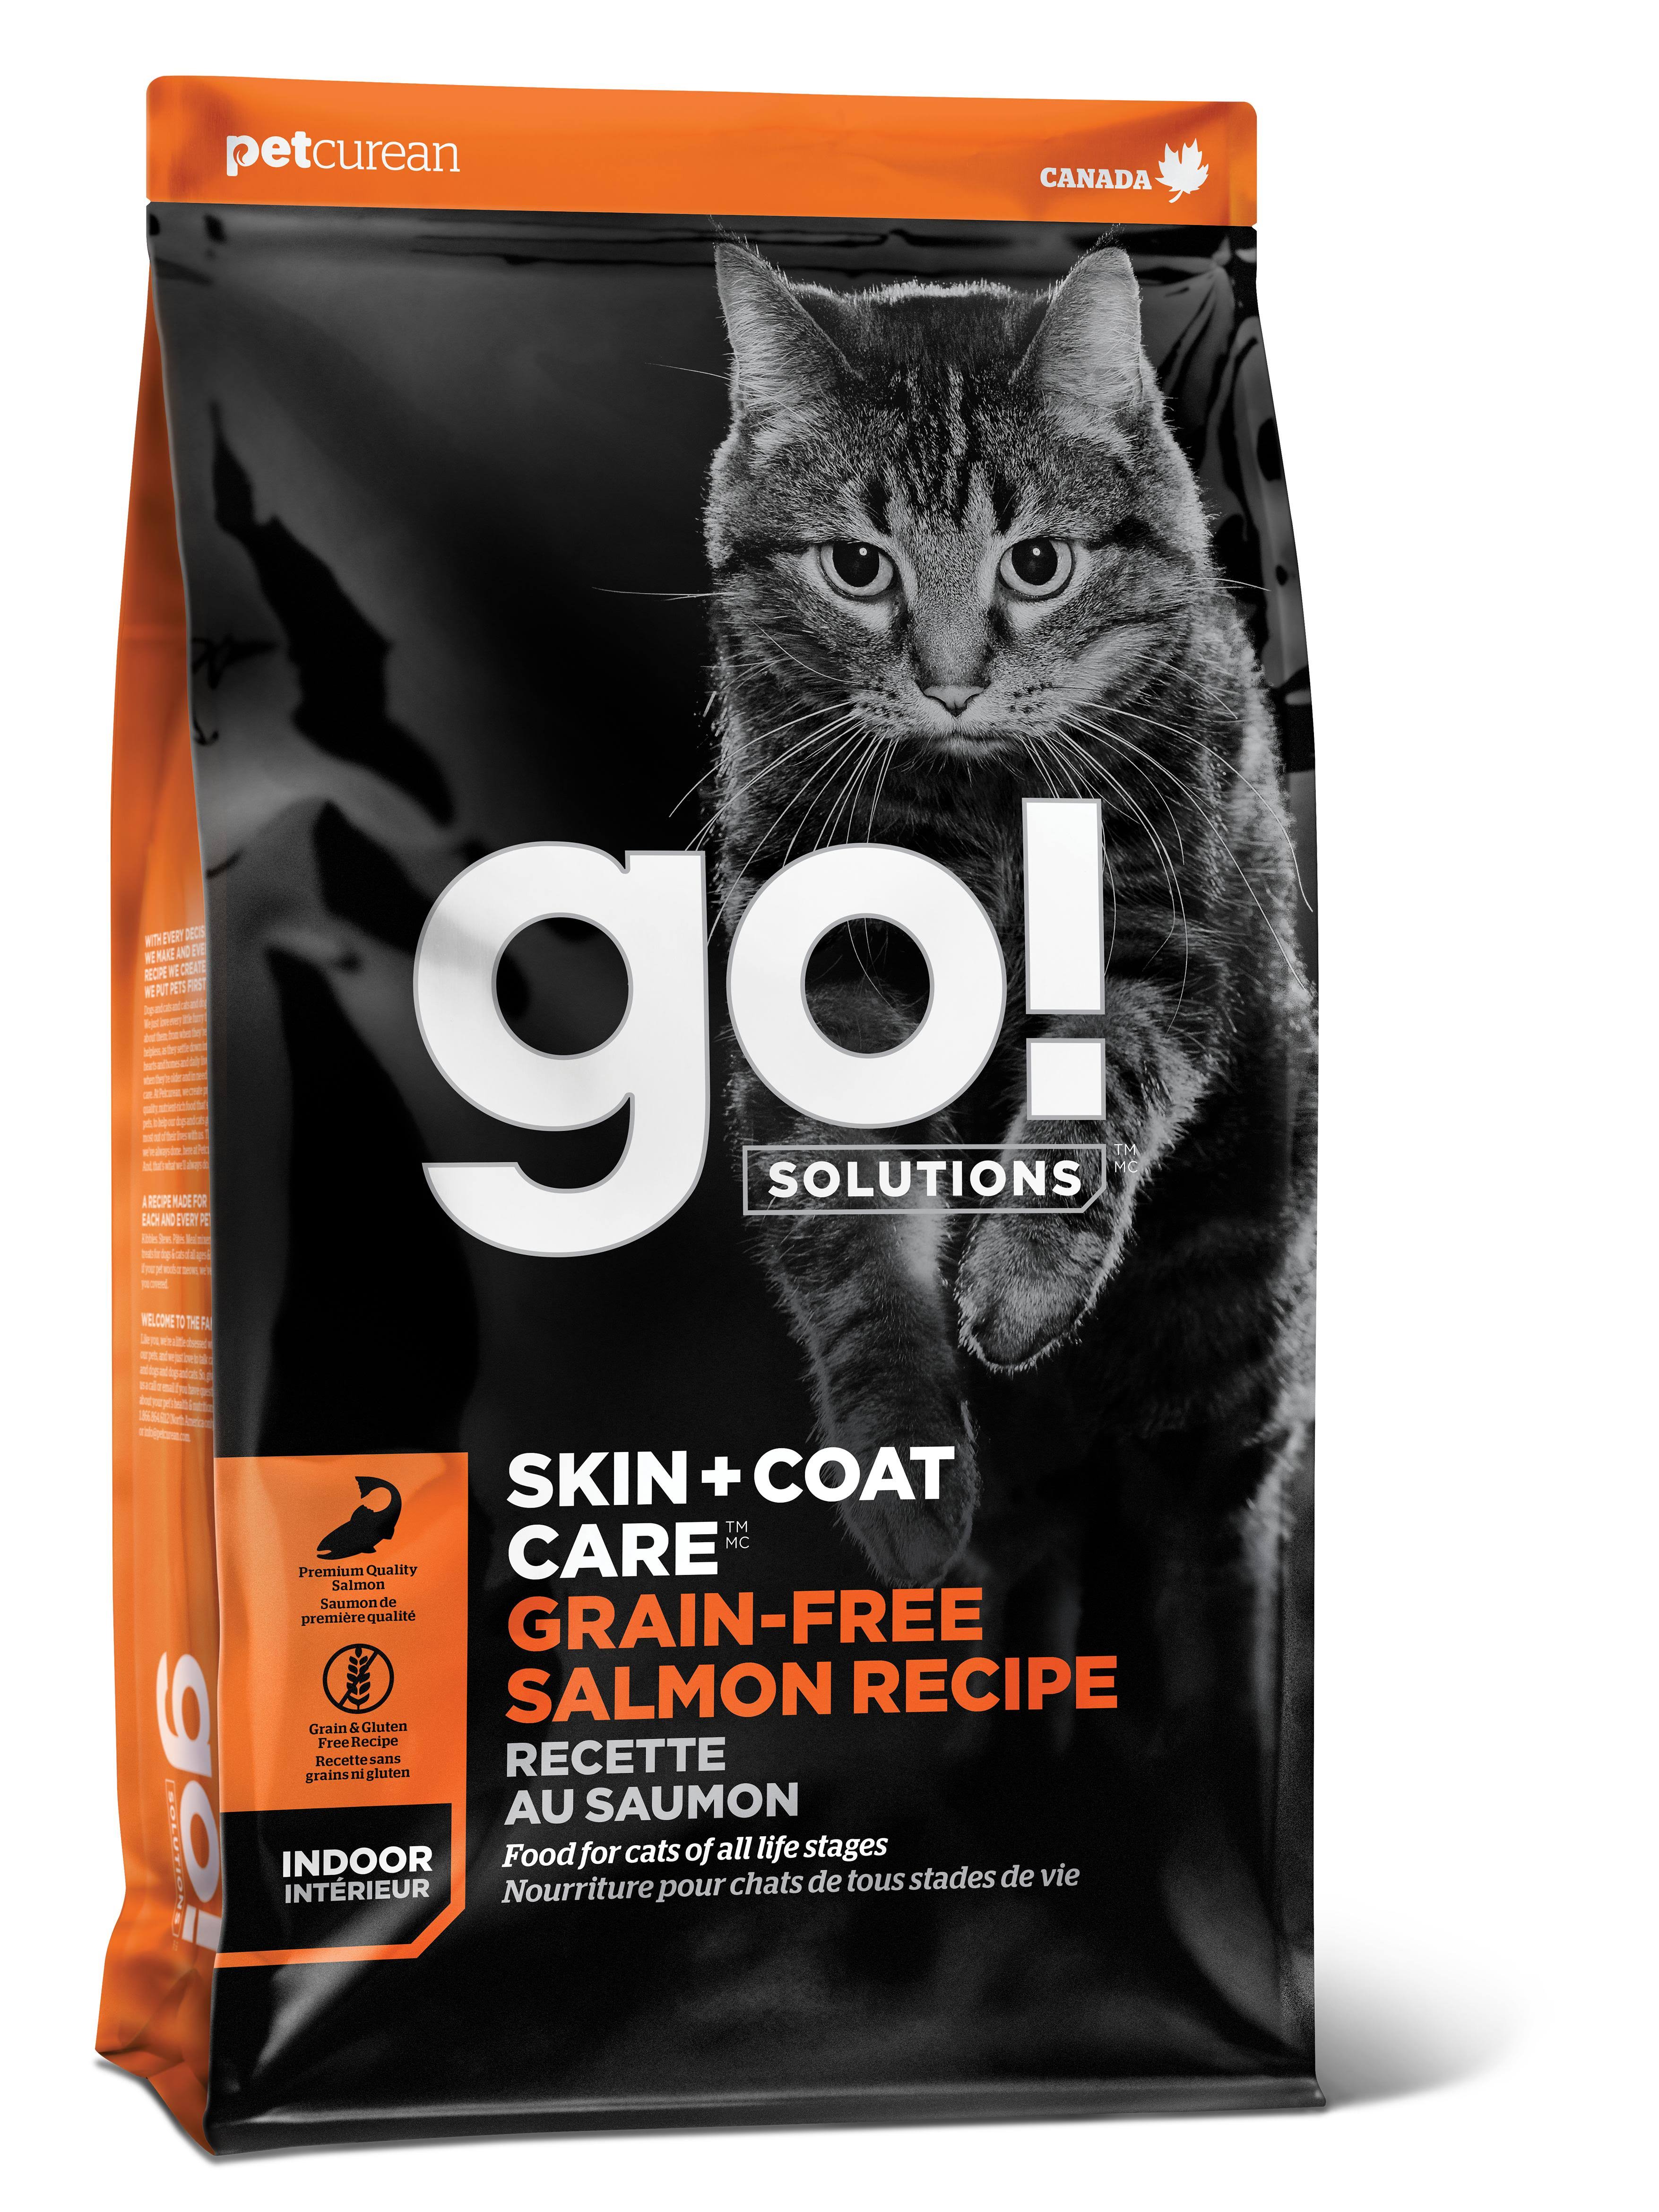 Go! Solutions Skin + Coat Care Grain-Free Salmon Dry Cat Food, 8-lb